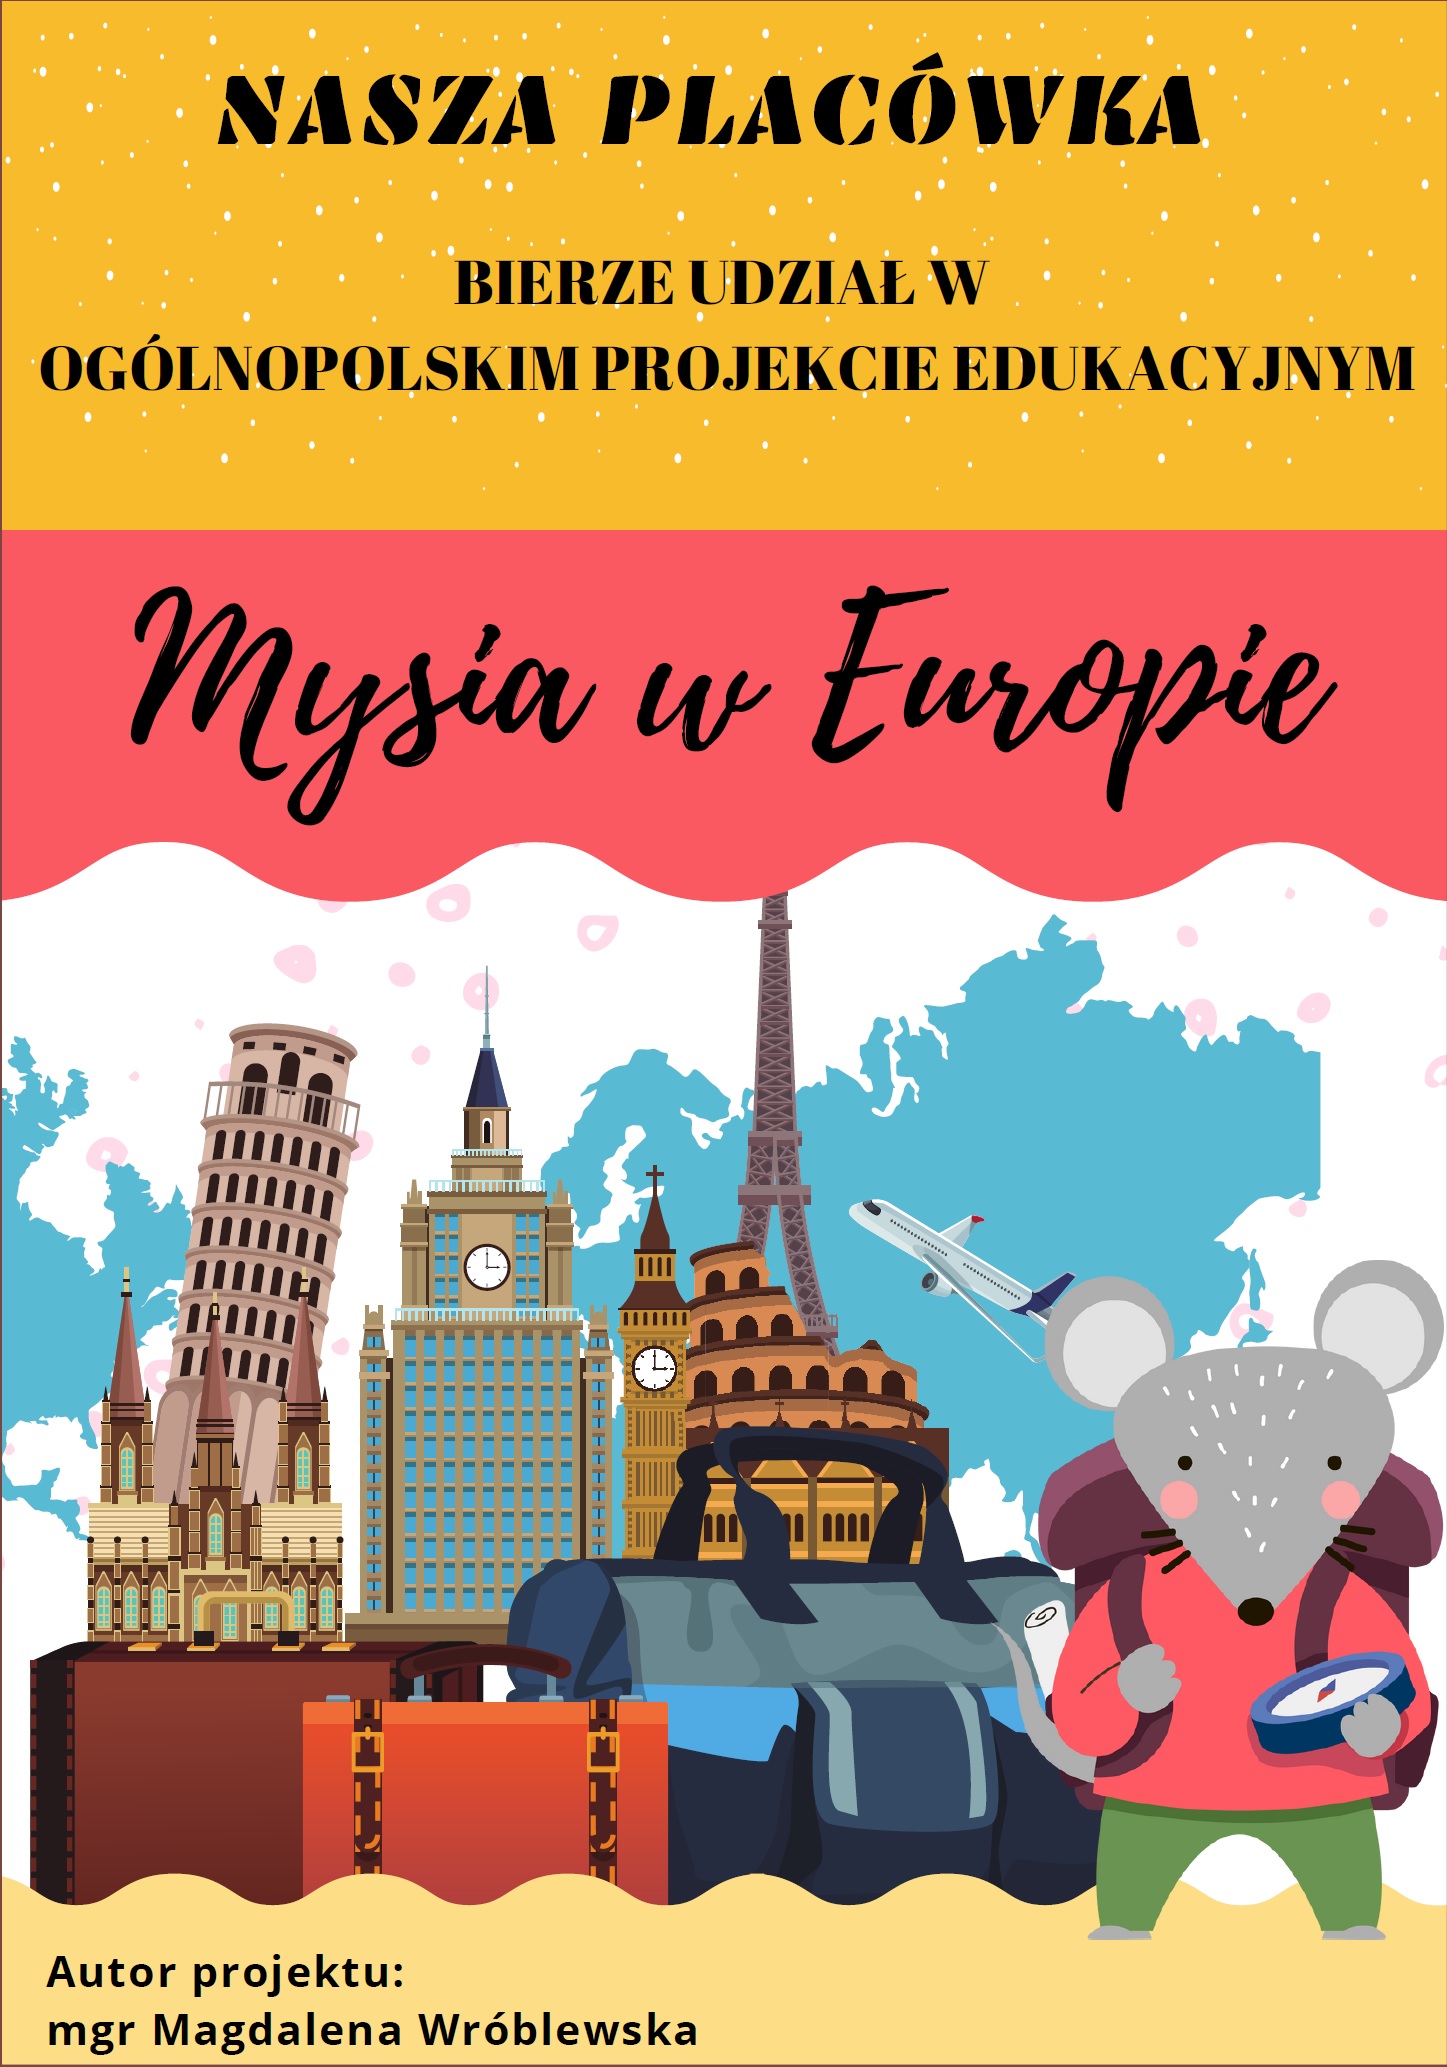 Ikona do artykułu: "Mysia w Europie" - Ogólnopolski Projekt Edukacyjny